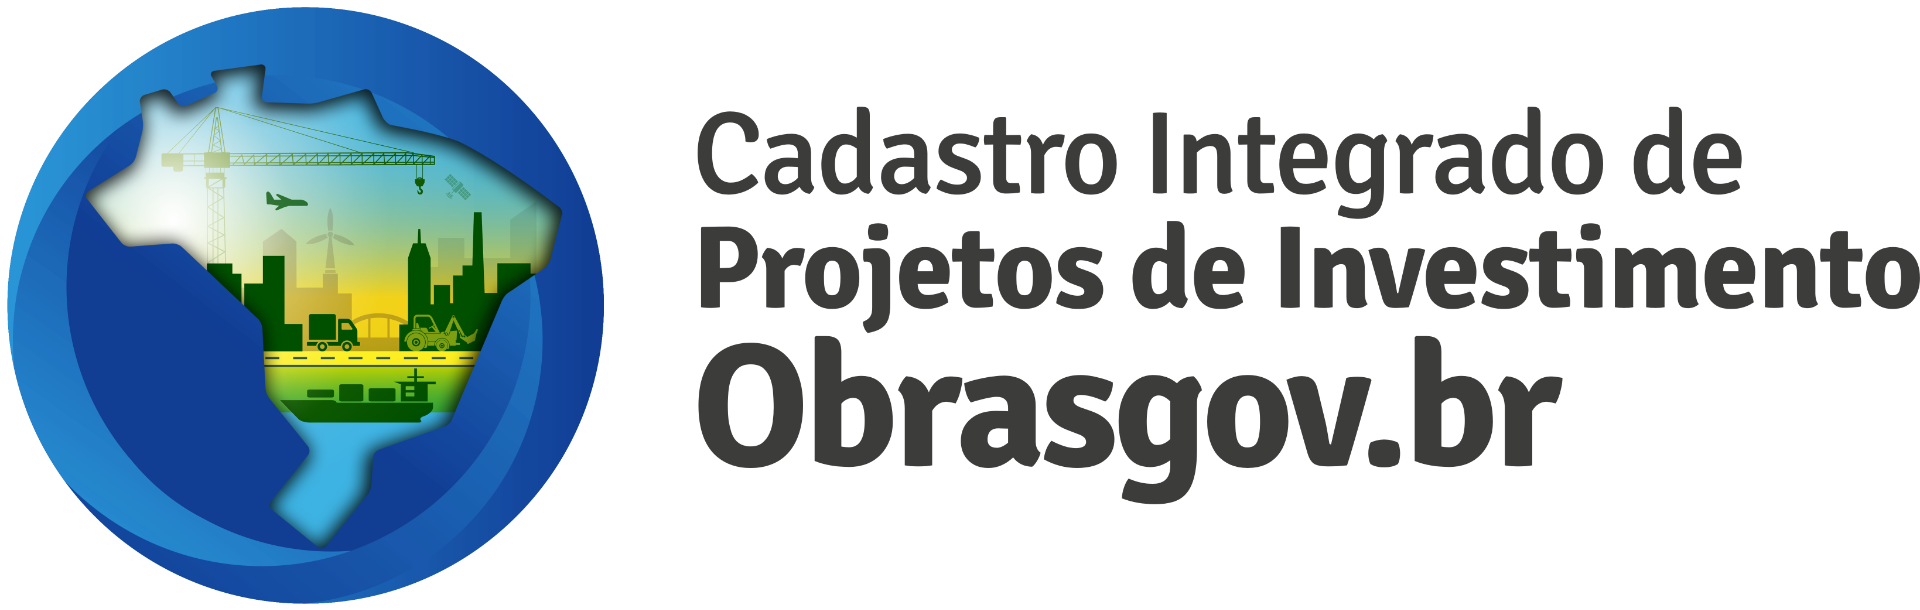 Logomarca Obrasgovbr horizontal.png